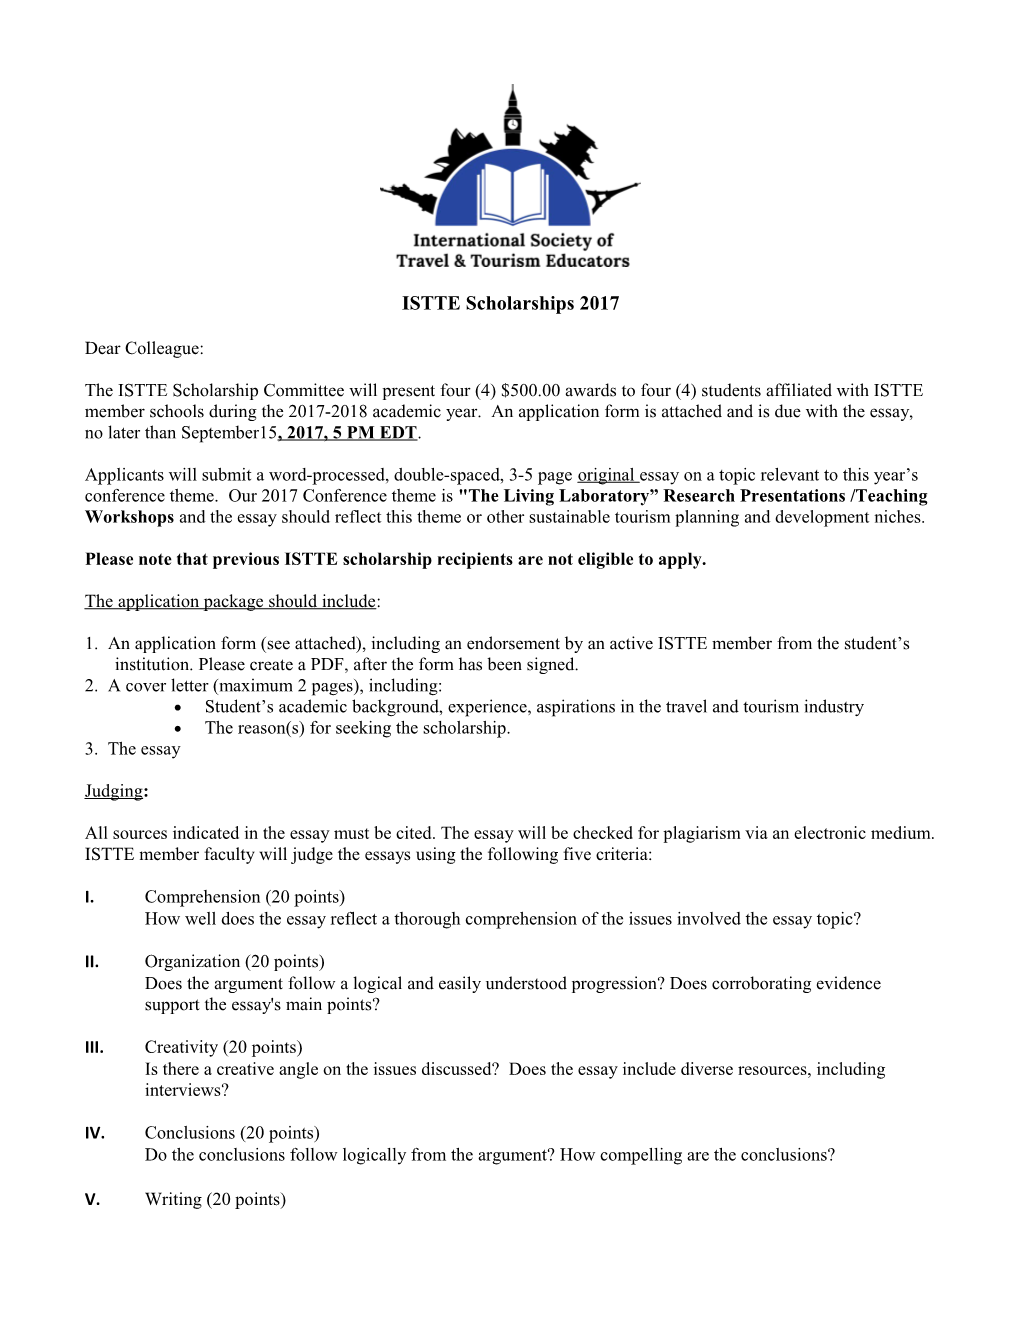 ISTTE Scholarships 2017